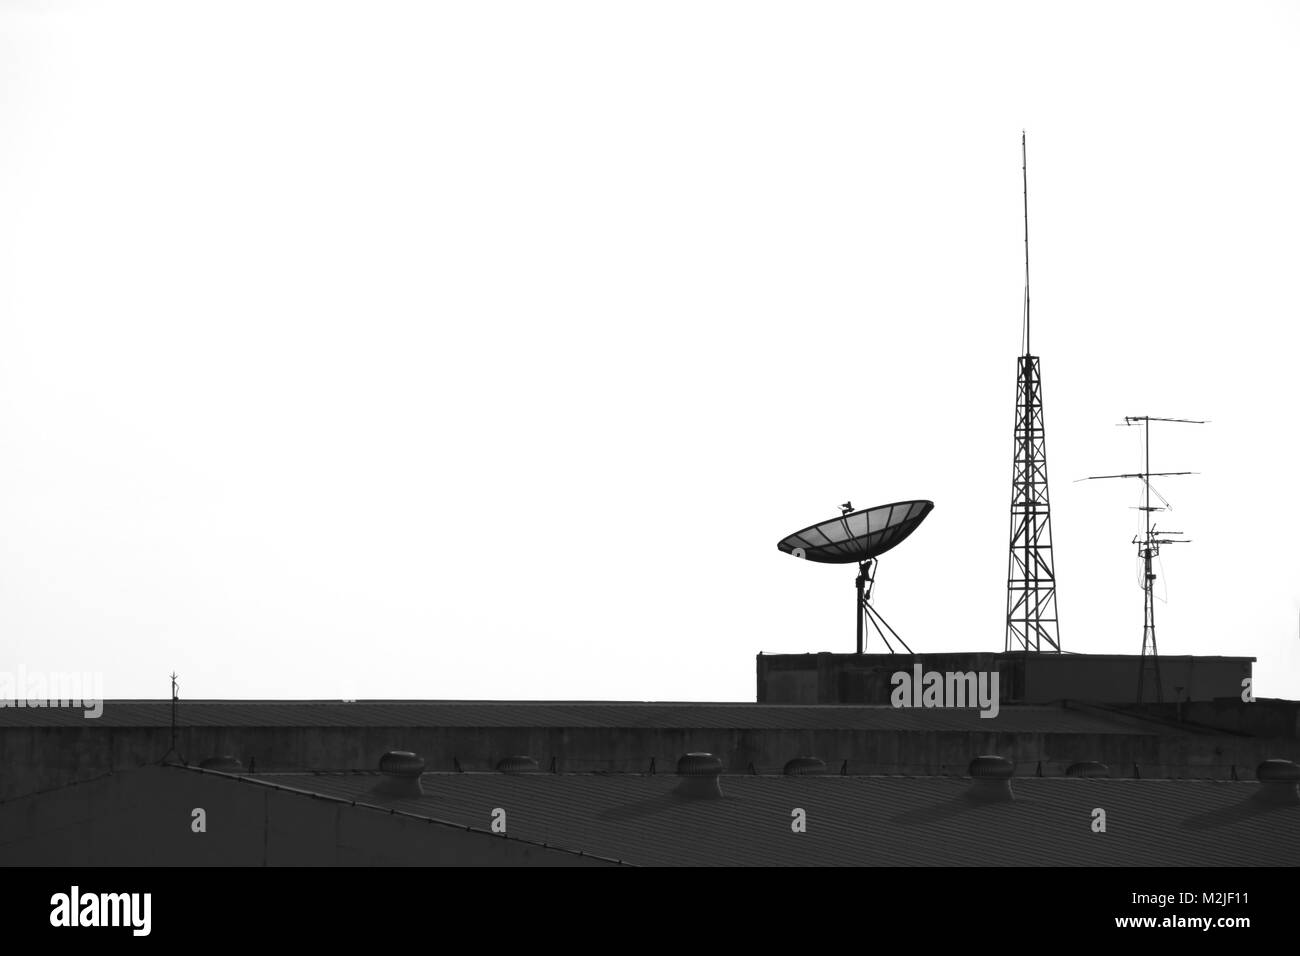 Tv satellitare e antenna sulla parte superiore della fabbrica Foto Stock